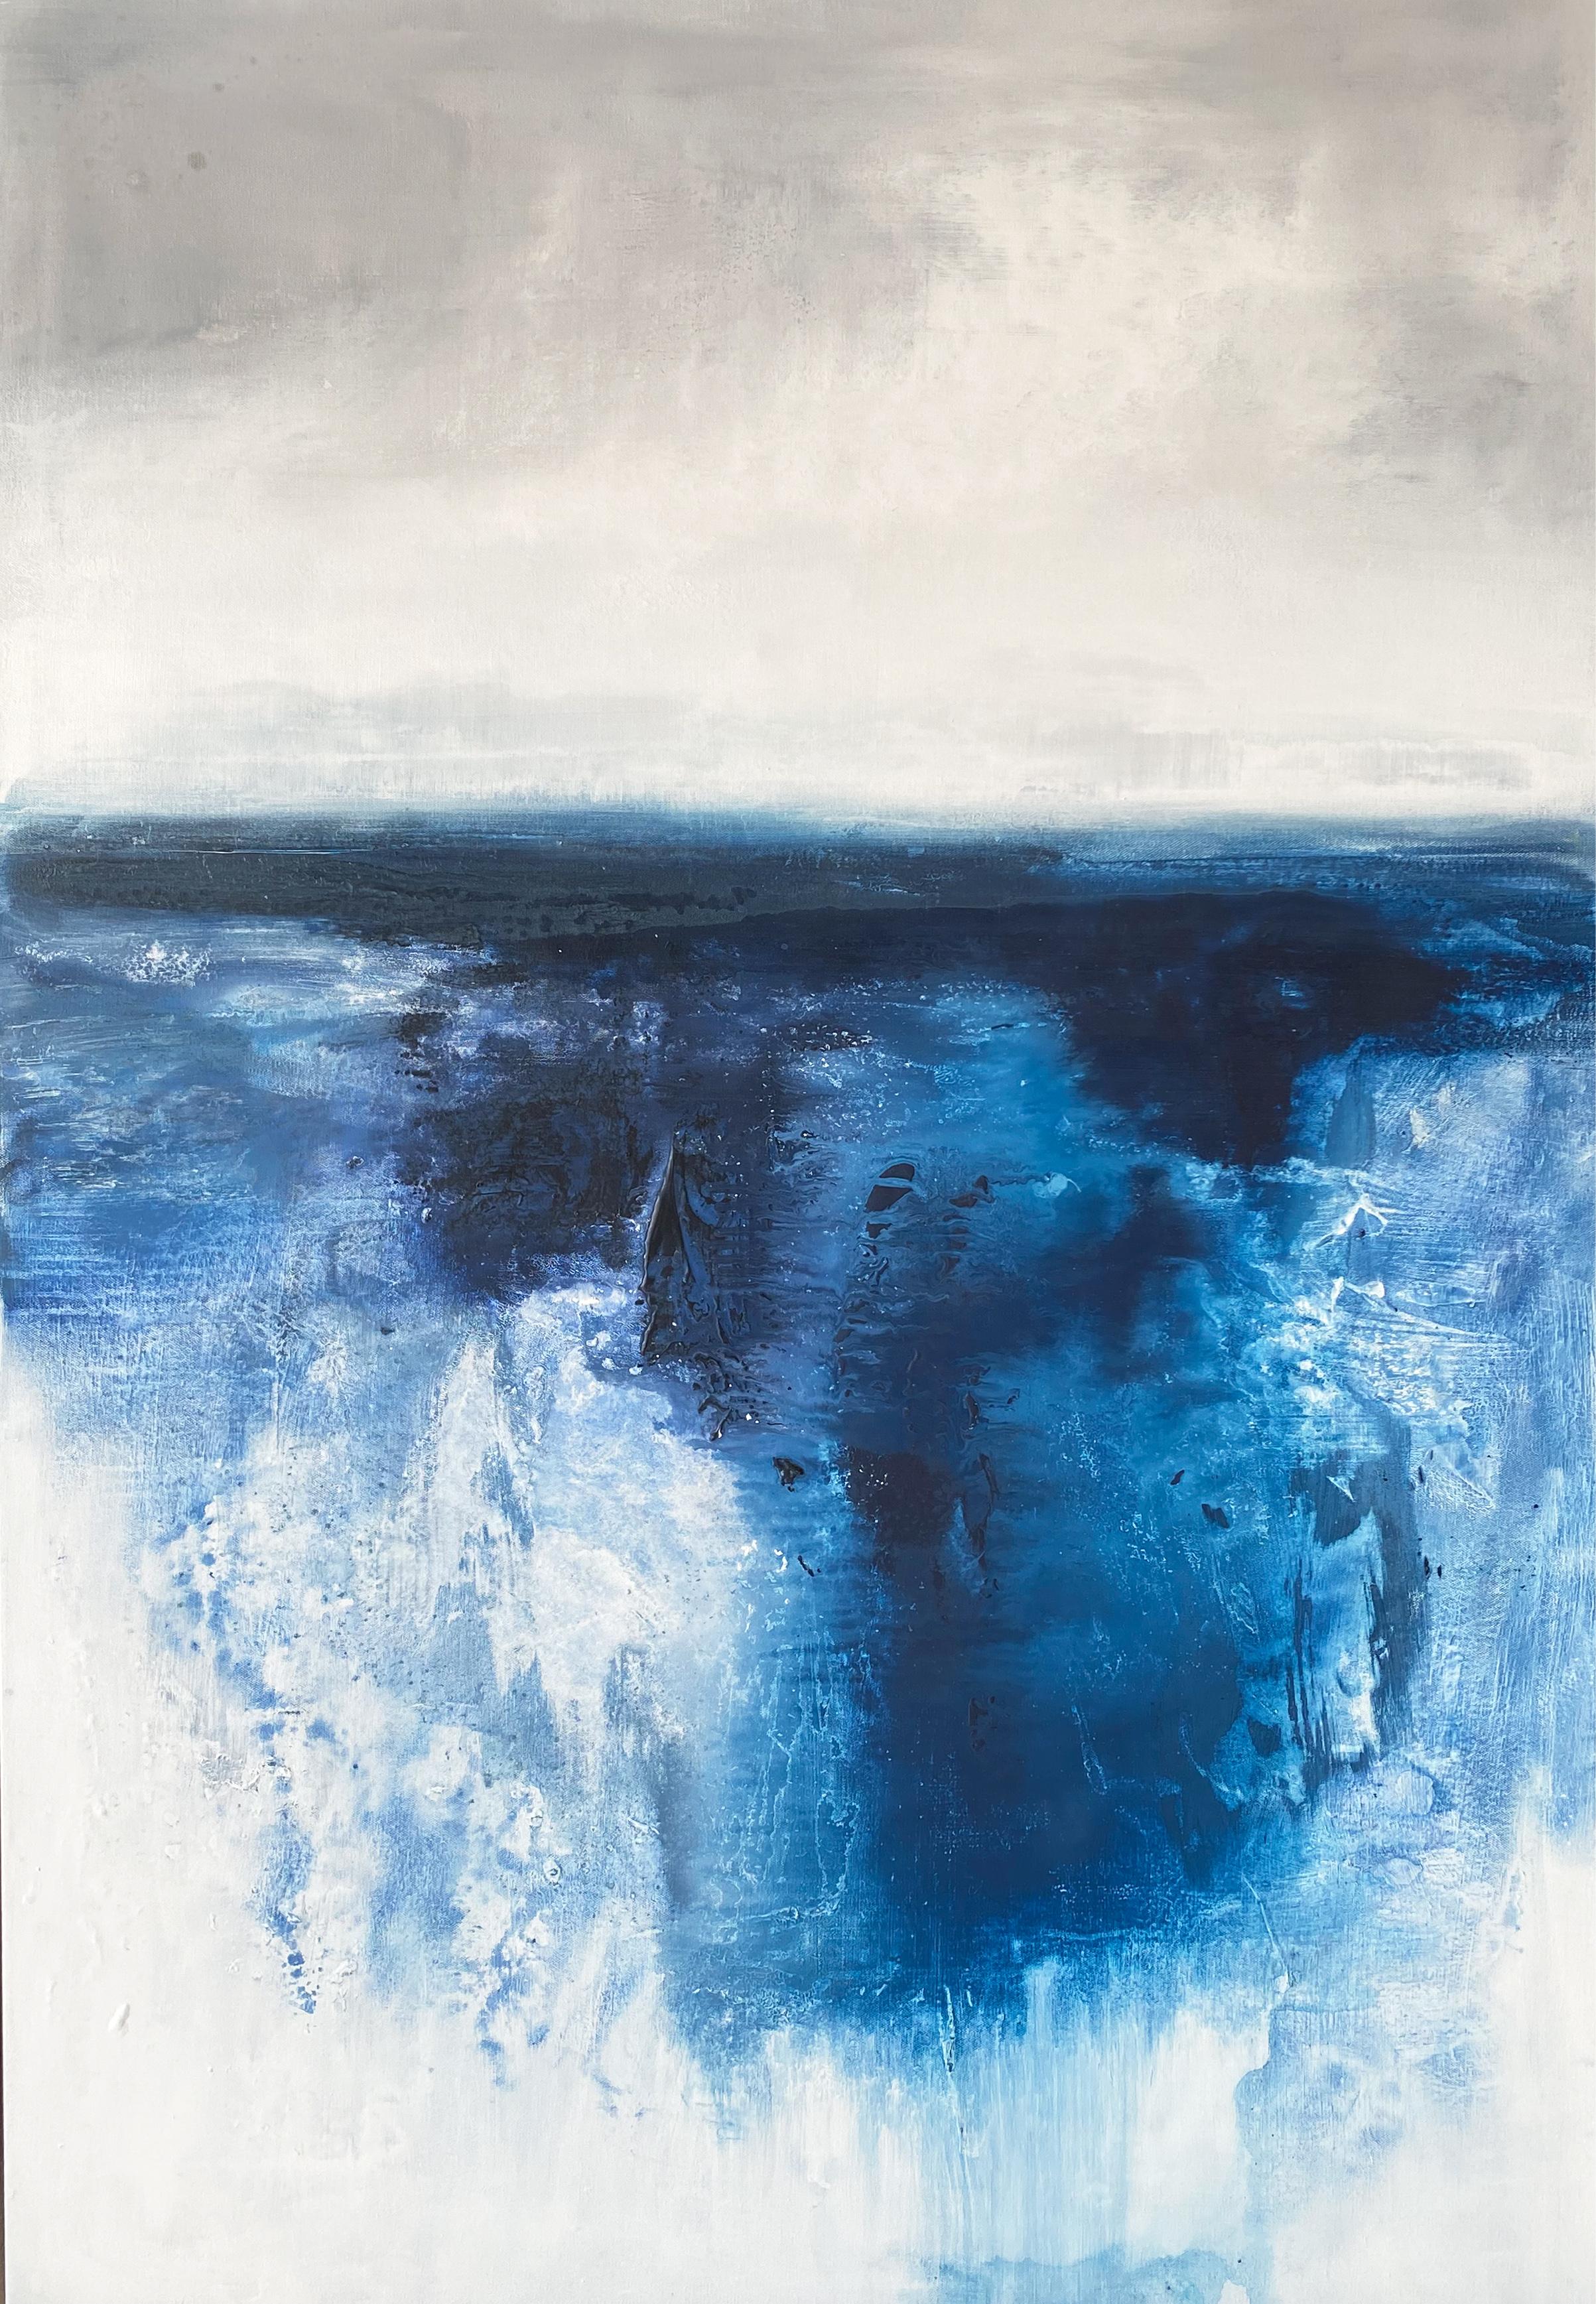 Landscape Painting Kathleen Rhee - Aquarelles dramatiques Peinture impressionniste abstraite océanique bleue et blanche 